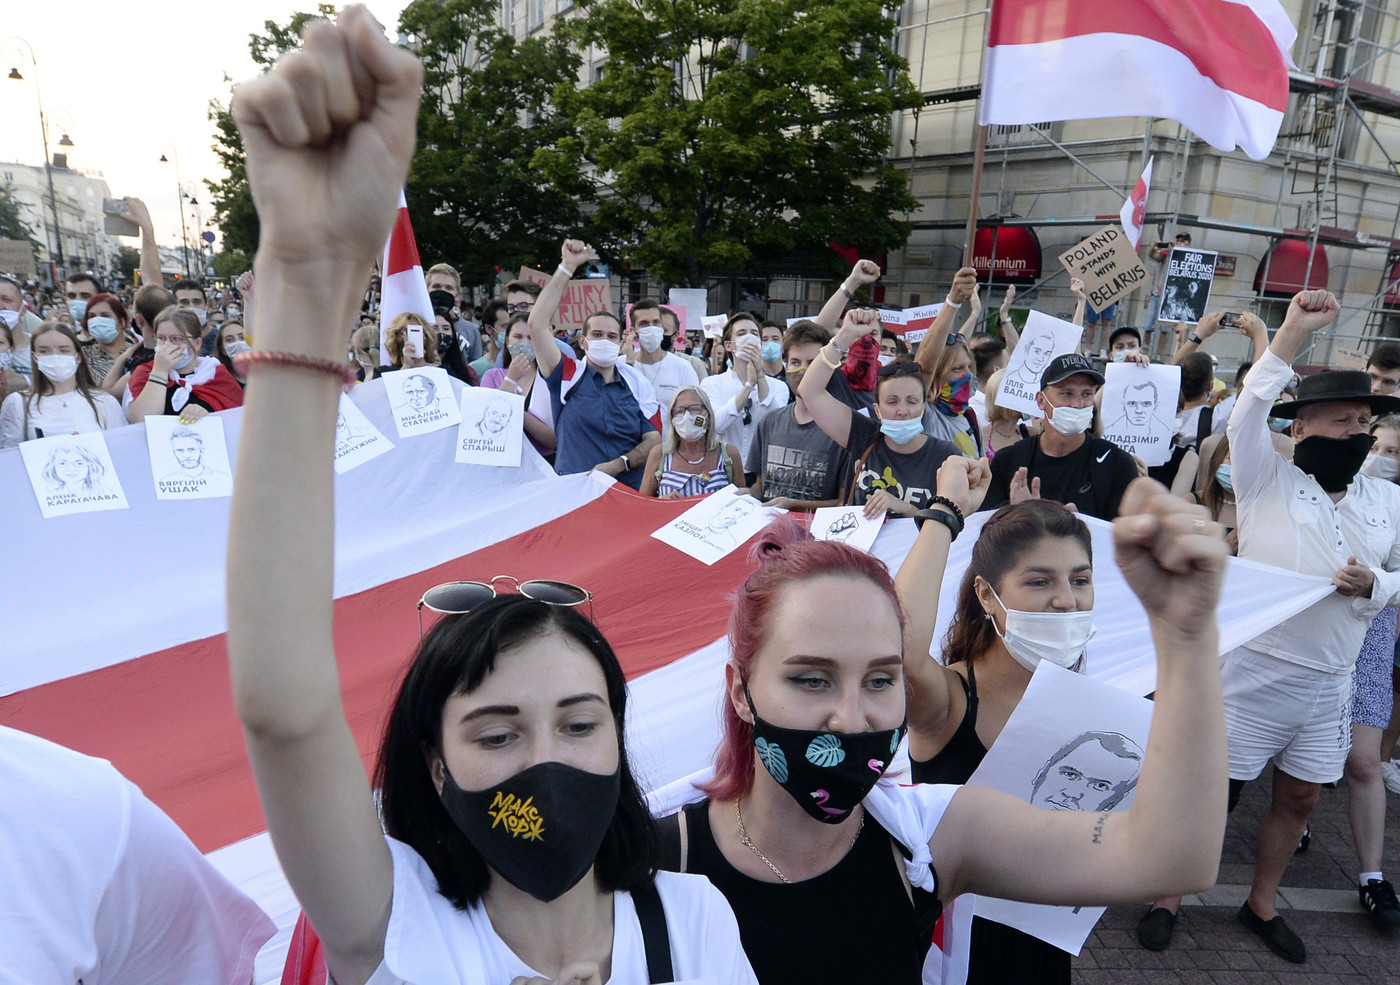 Bielorussia, non si ferma la protesta. 2 mila manifestanti arrestati